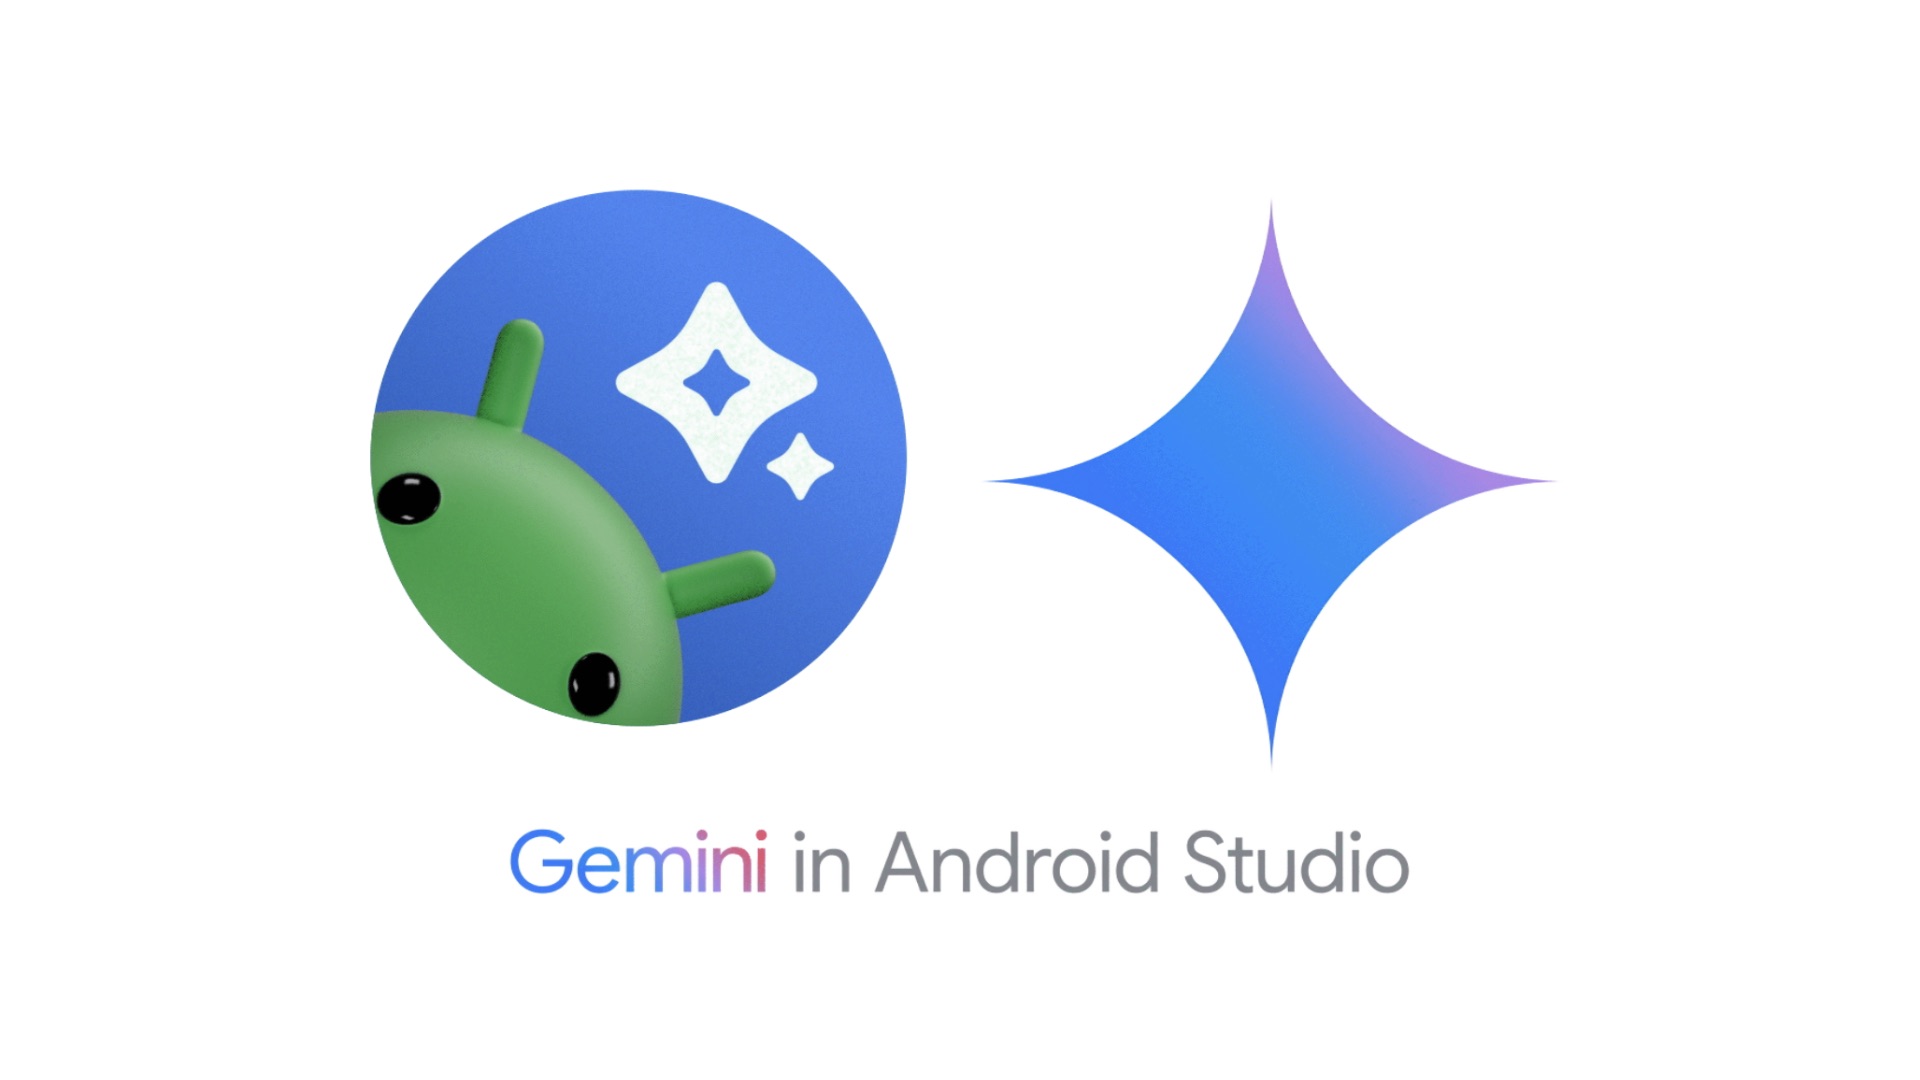 Создание Android-приложений стало проще благодаря встроенному ИИ Gemini Pro в Android Studio